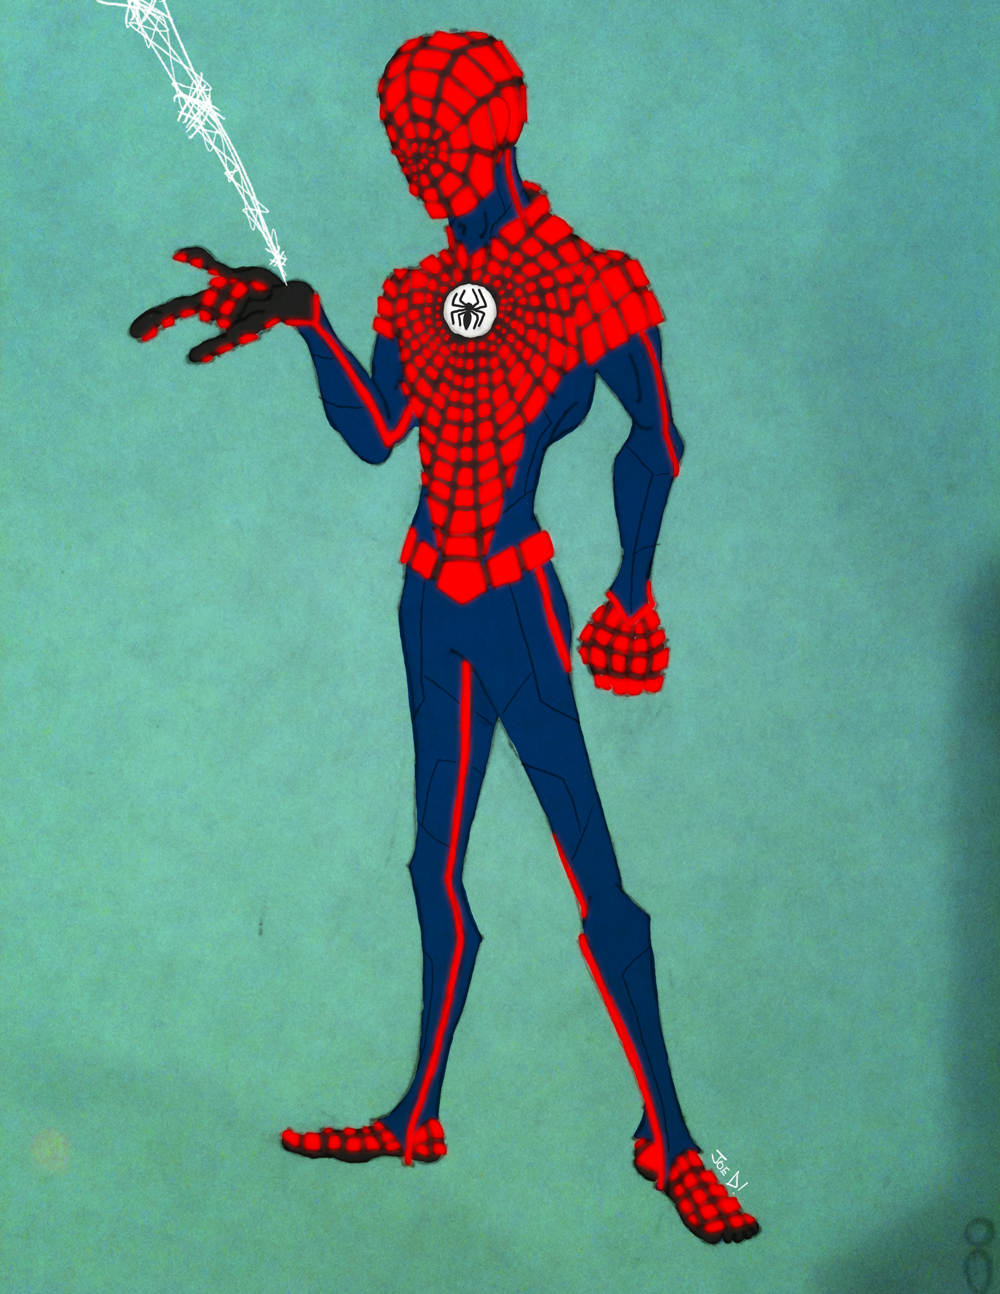 Tech Spider-Man by Joe D!